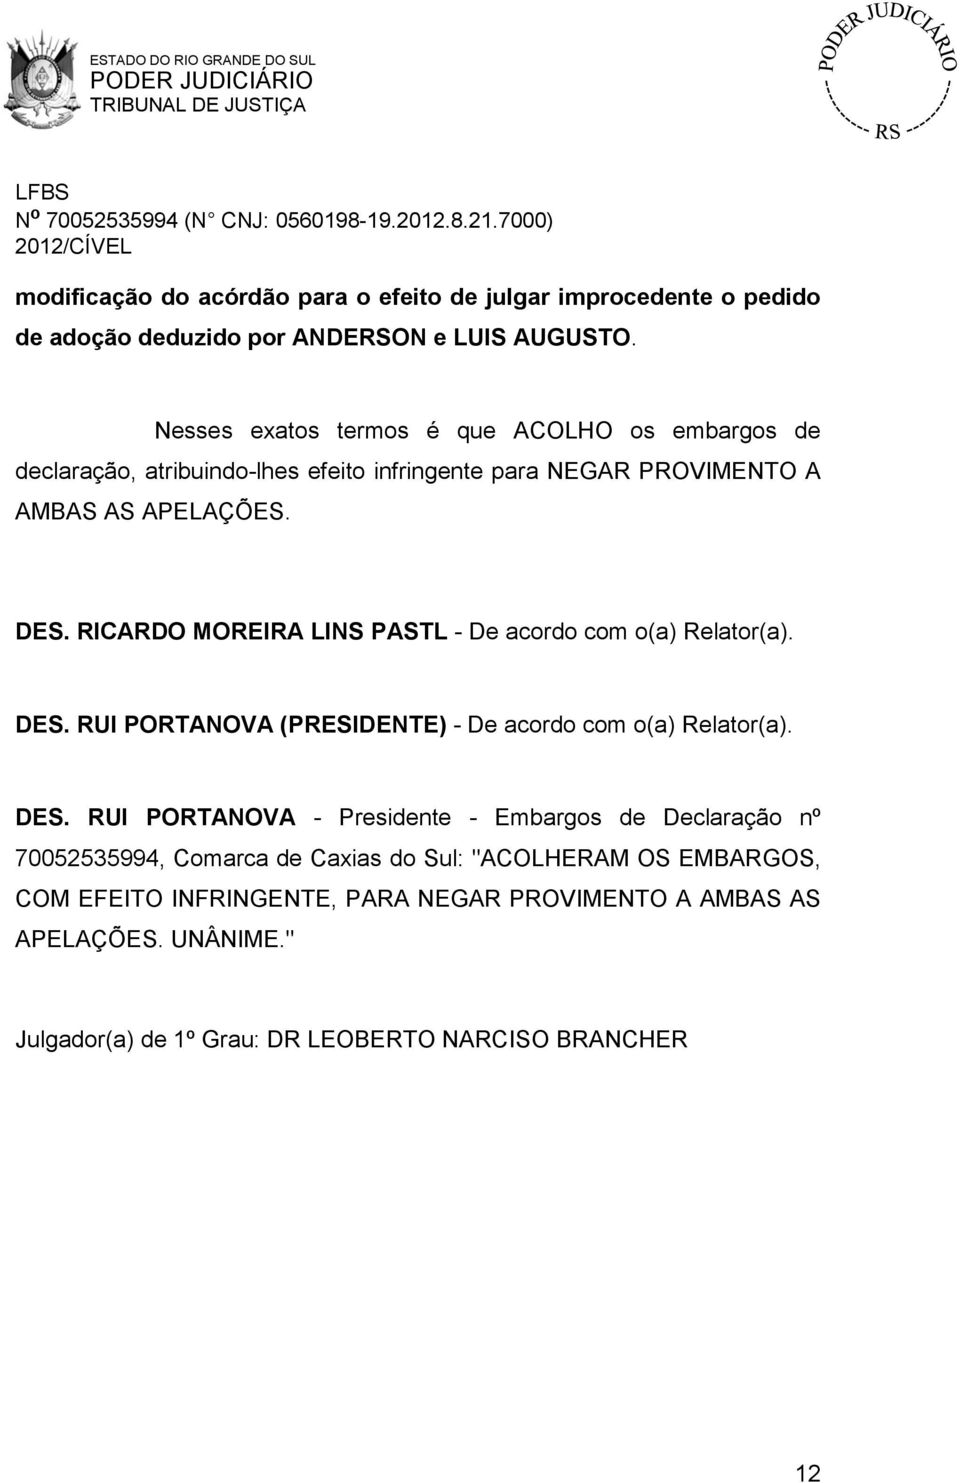 RICARDO MOREIRA LINS PASTL - De acordo com o(a) Relator(a). DES.